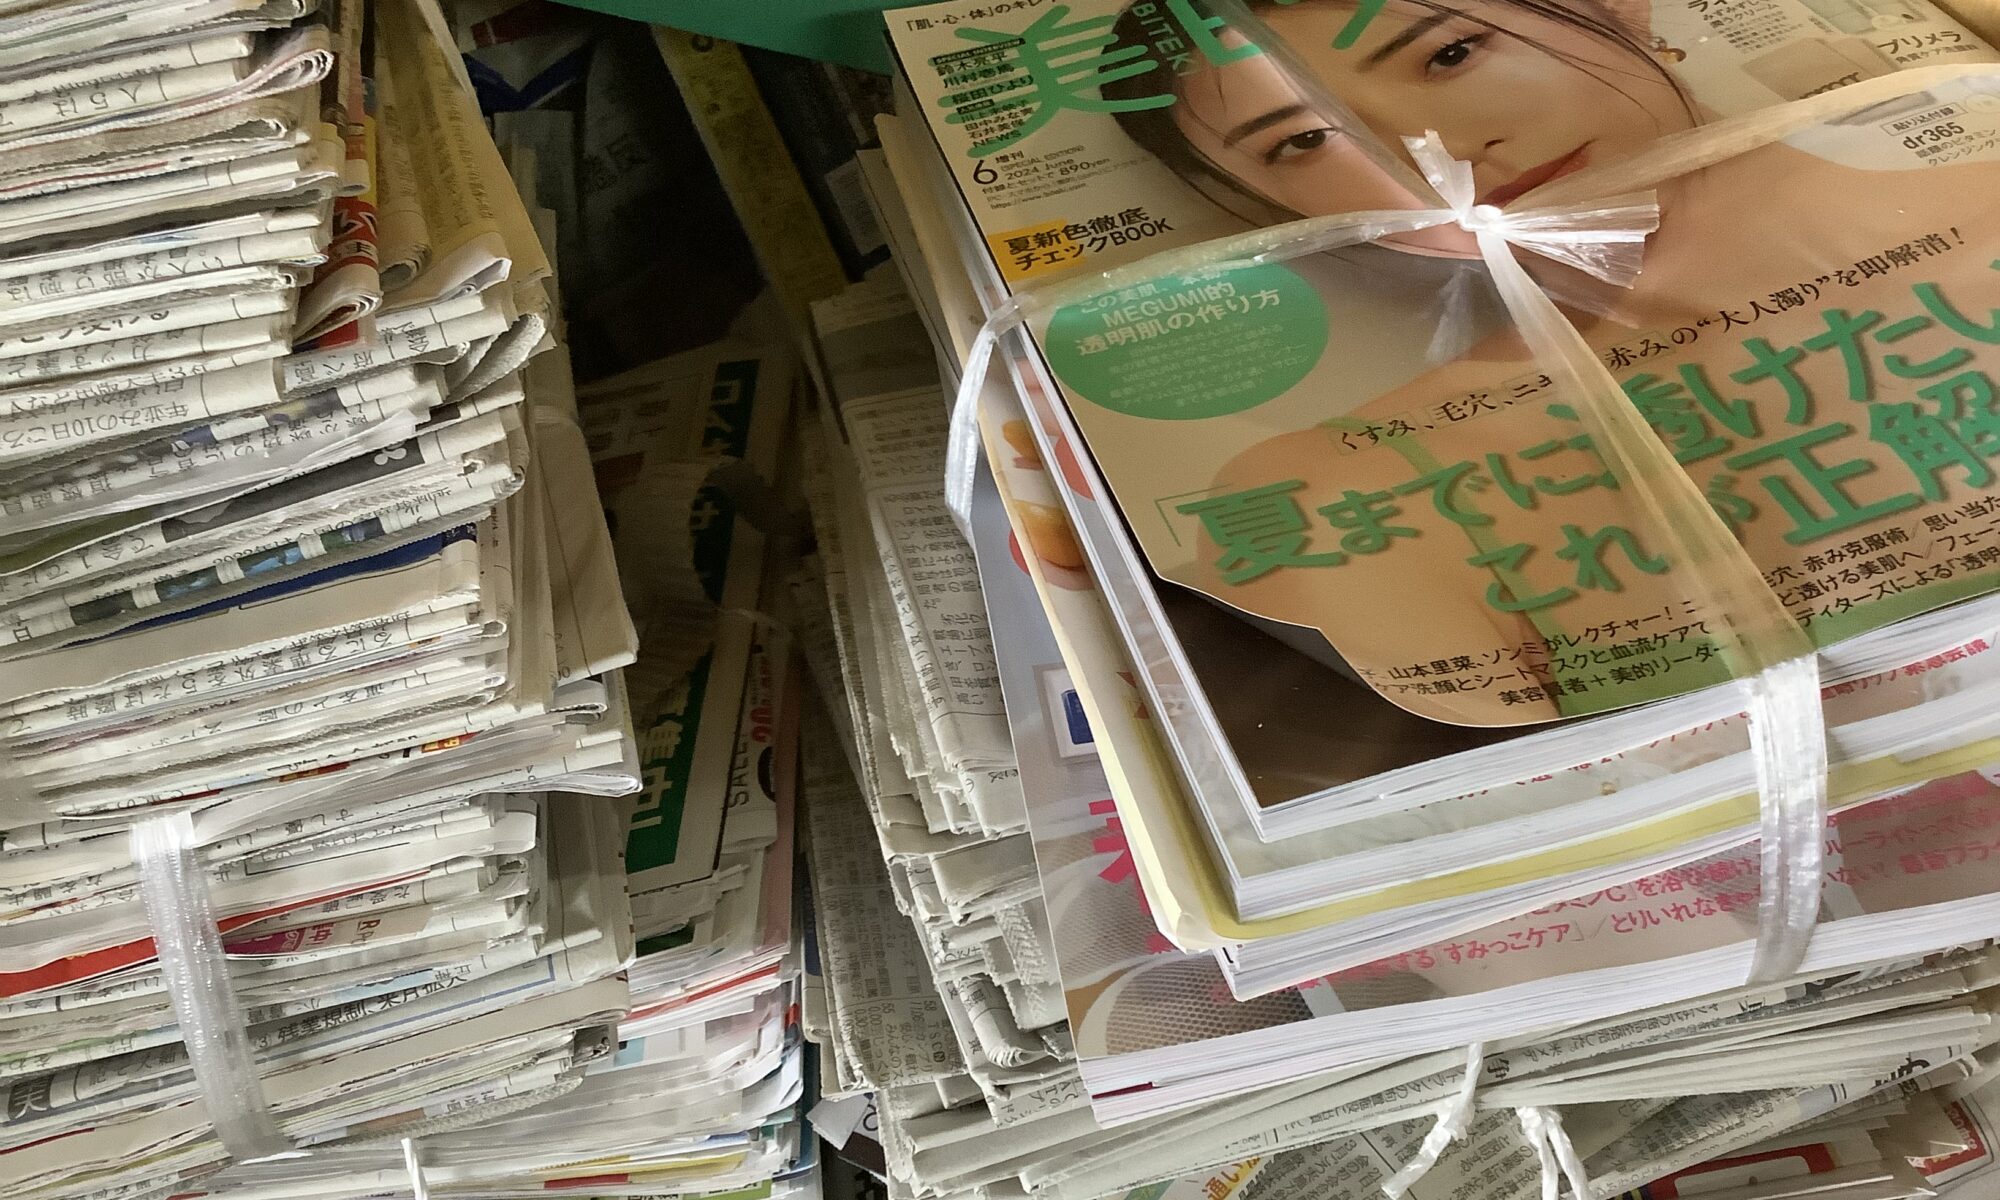 福山市曙町で回収した新聞と雑誌